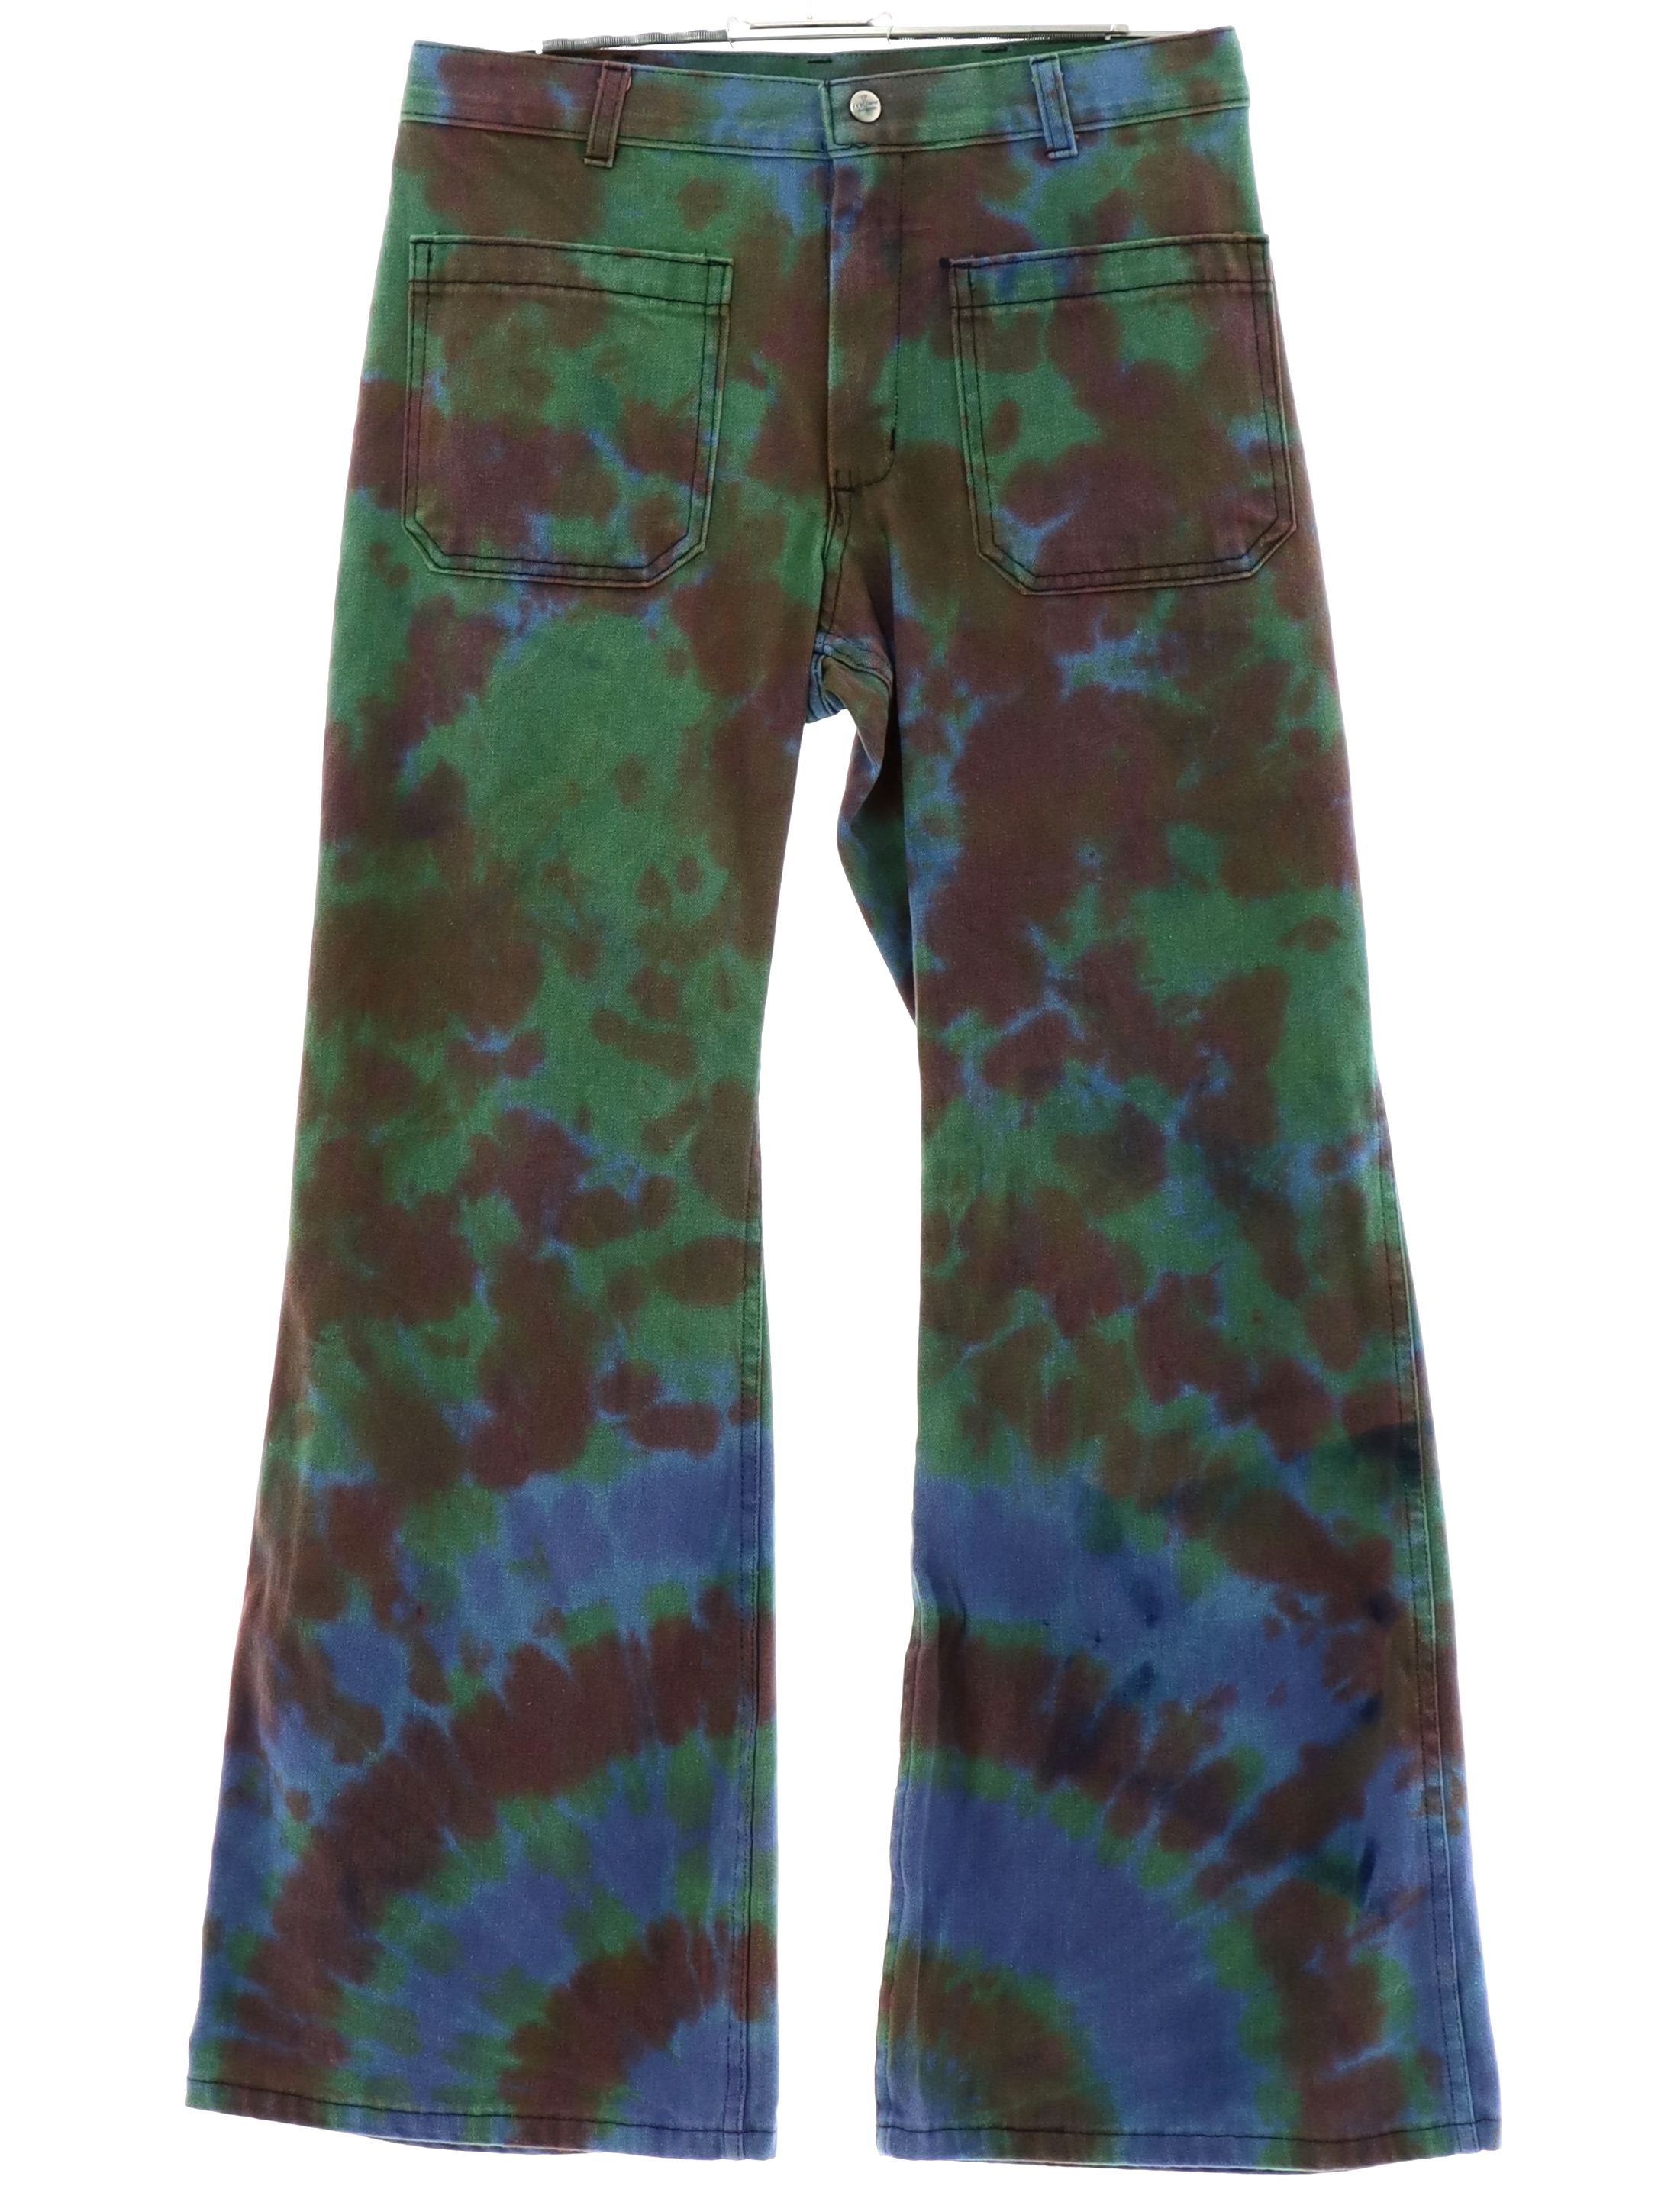 Navy Tie-Dye Cargo Pants